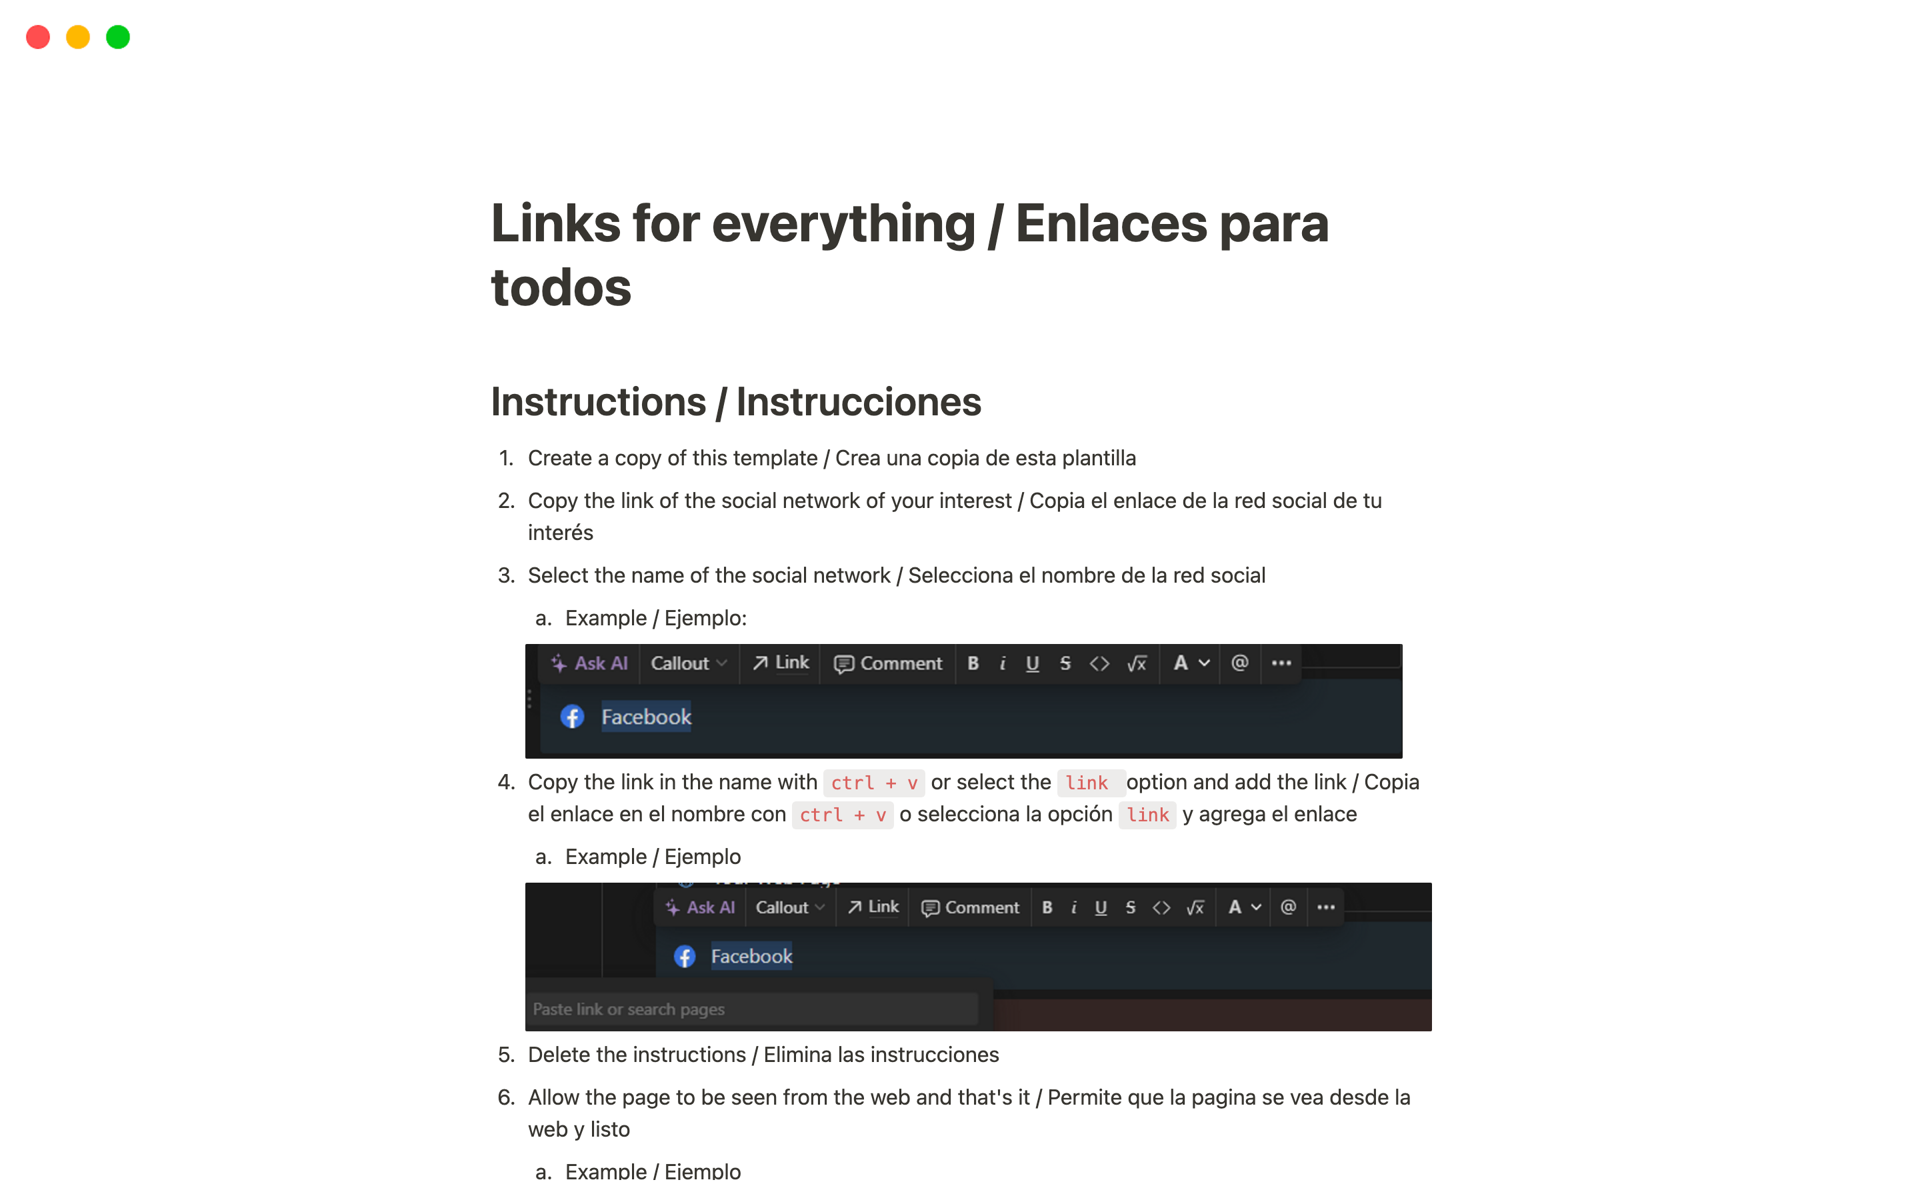 Vista previa de una plantilla para Links for everything / Enlaces para todos